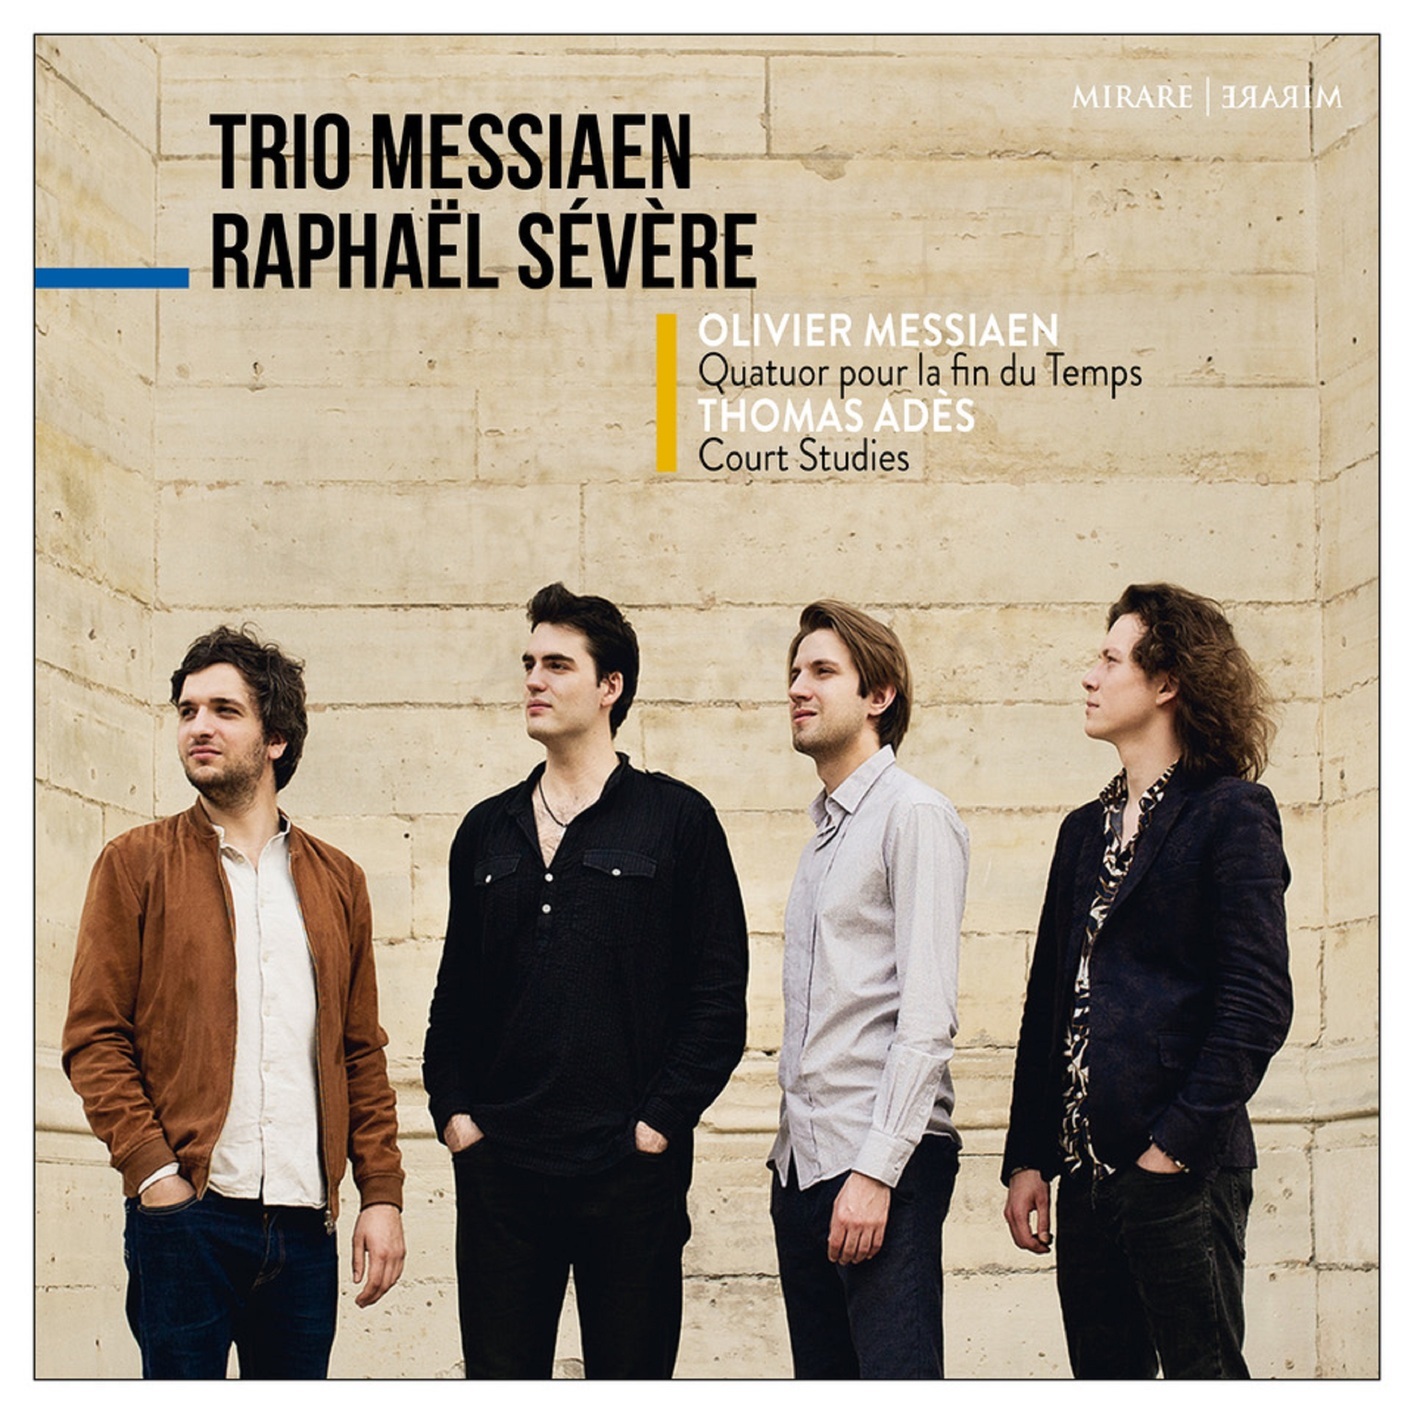 Raphael Severe & Trio Messiaen - Messiaen: Quatuor pour la fin du Temps (2018) [FLAC 24bit/96kHz]